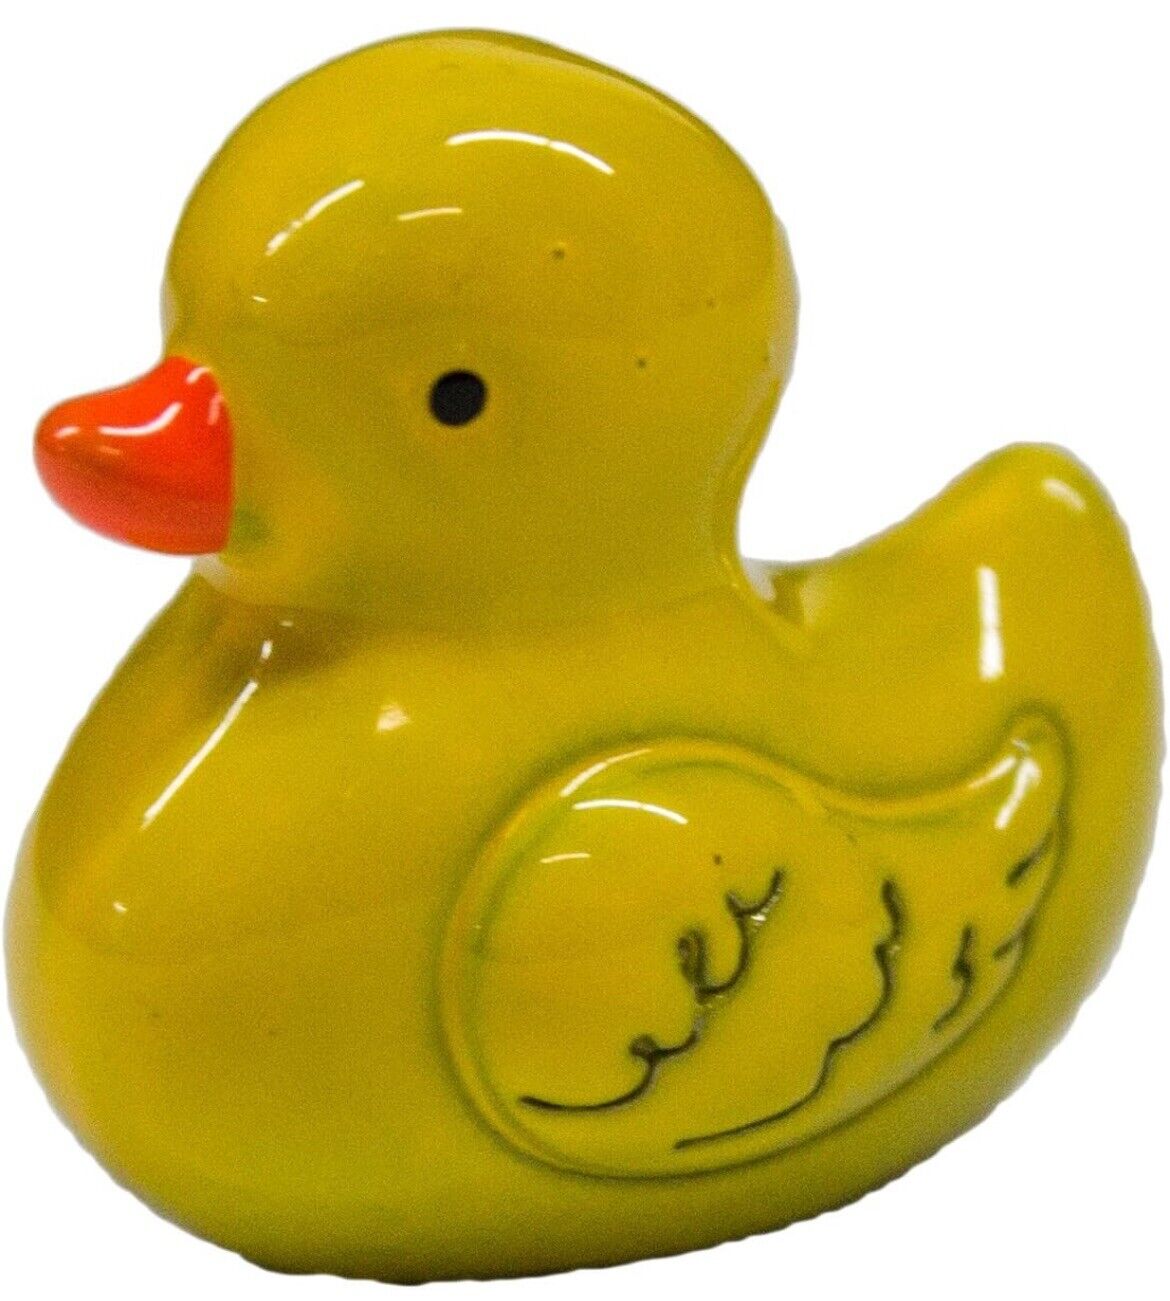 LUCKY DUCK Rubber Ducky CHARM Pocket Mini Figurine Good Luck Ganz